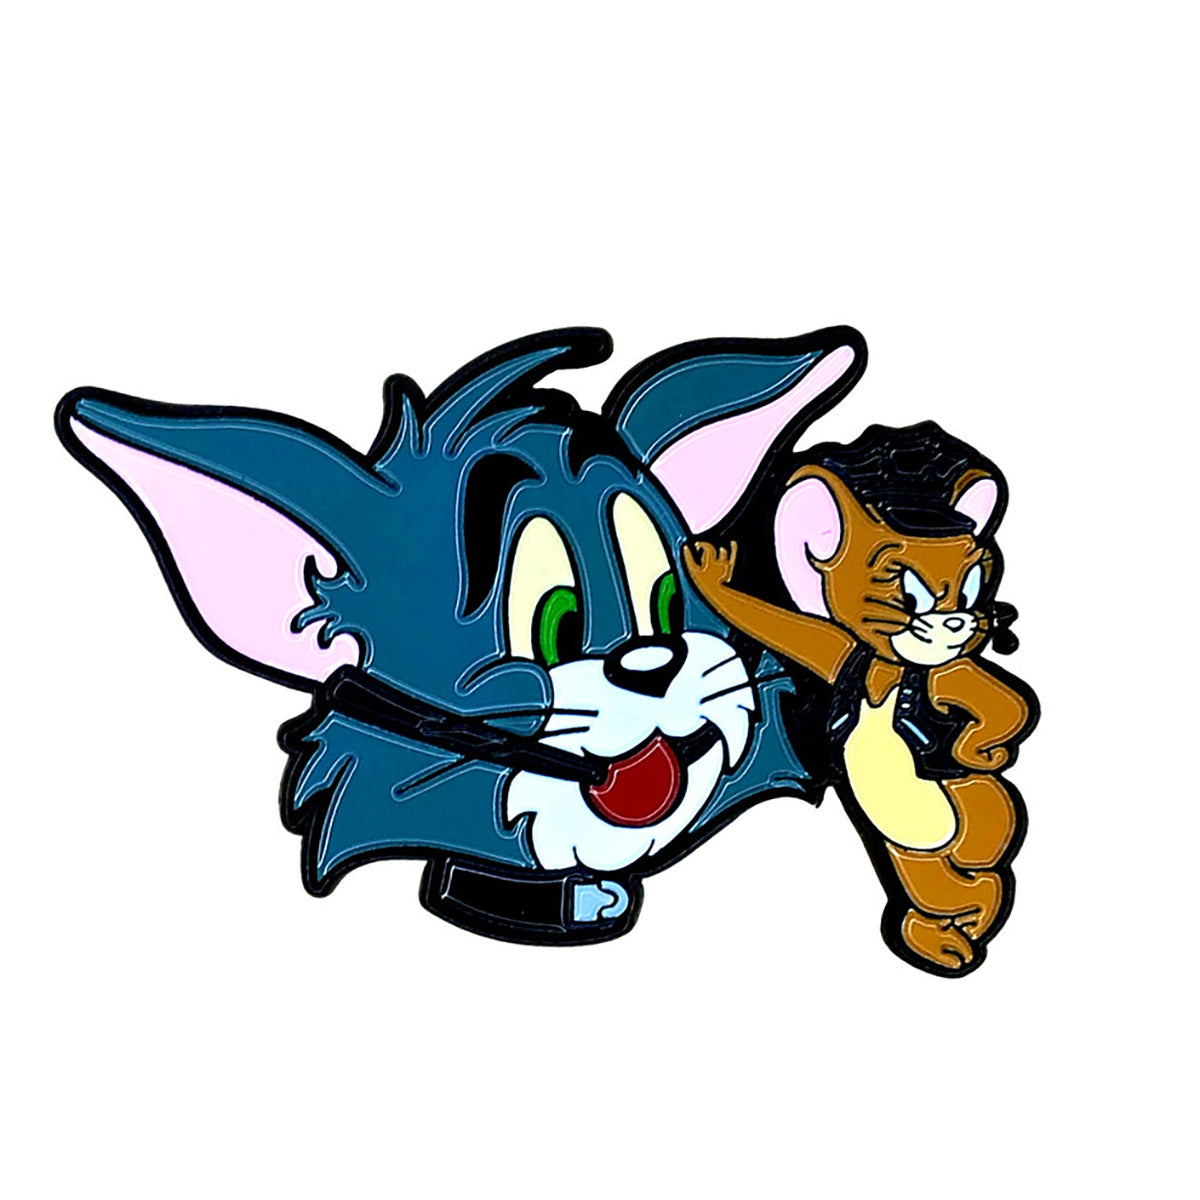 Geeky & Kinky Tom & Jerry Pin